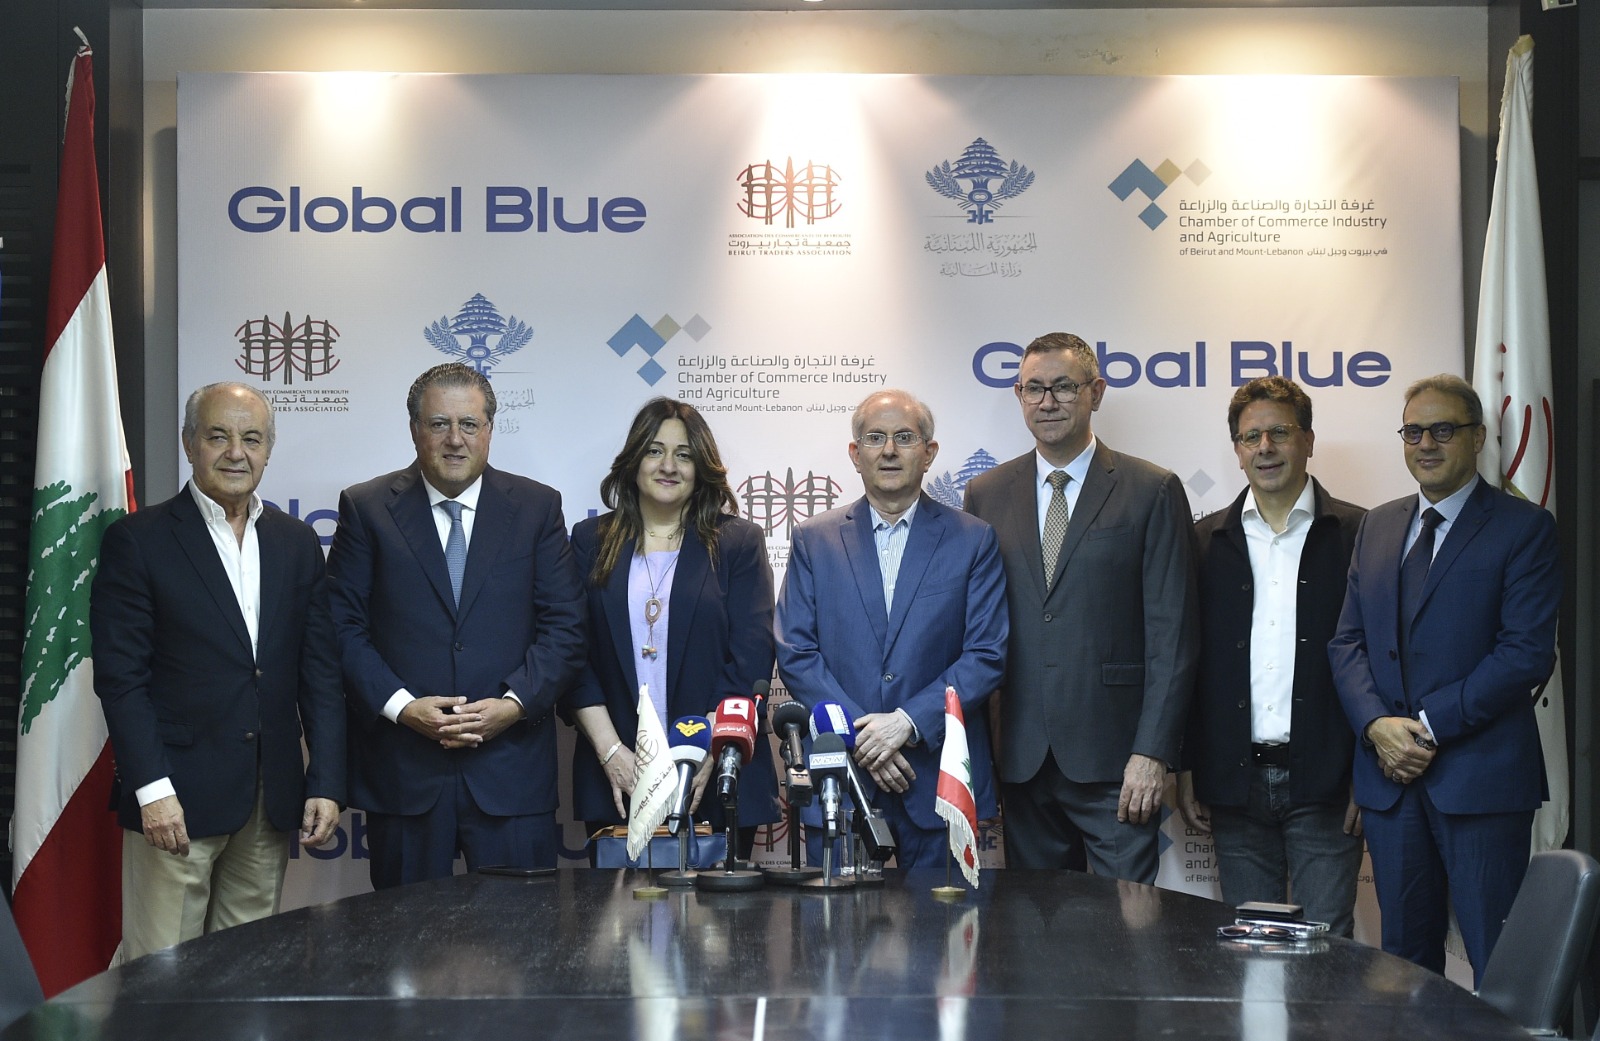  Global Blueتعيد خدمة التسوق المعفي من الضرائب في لبنان